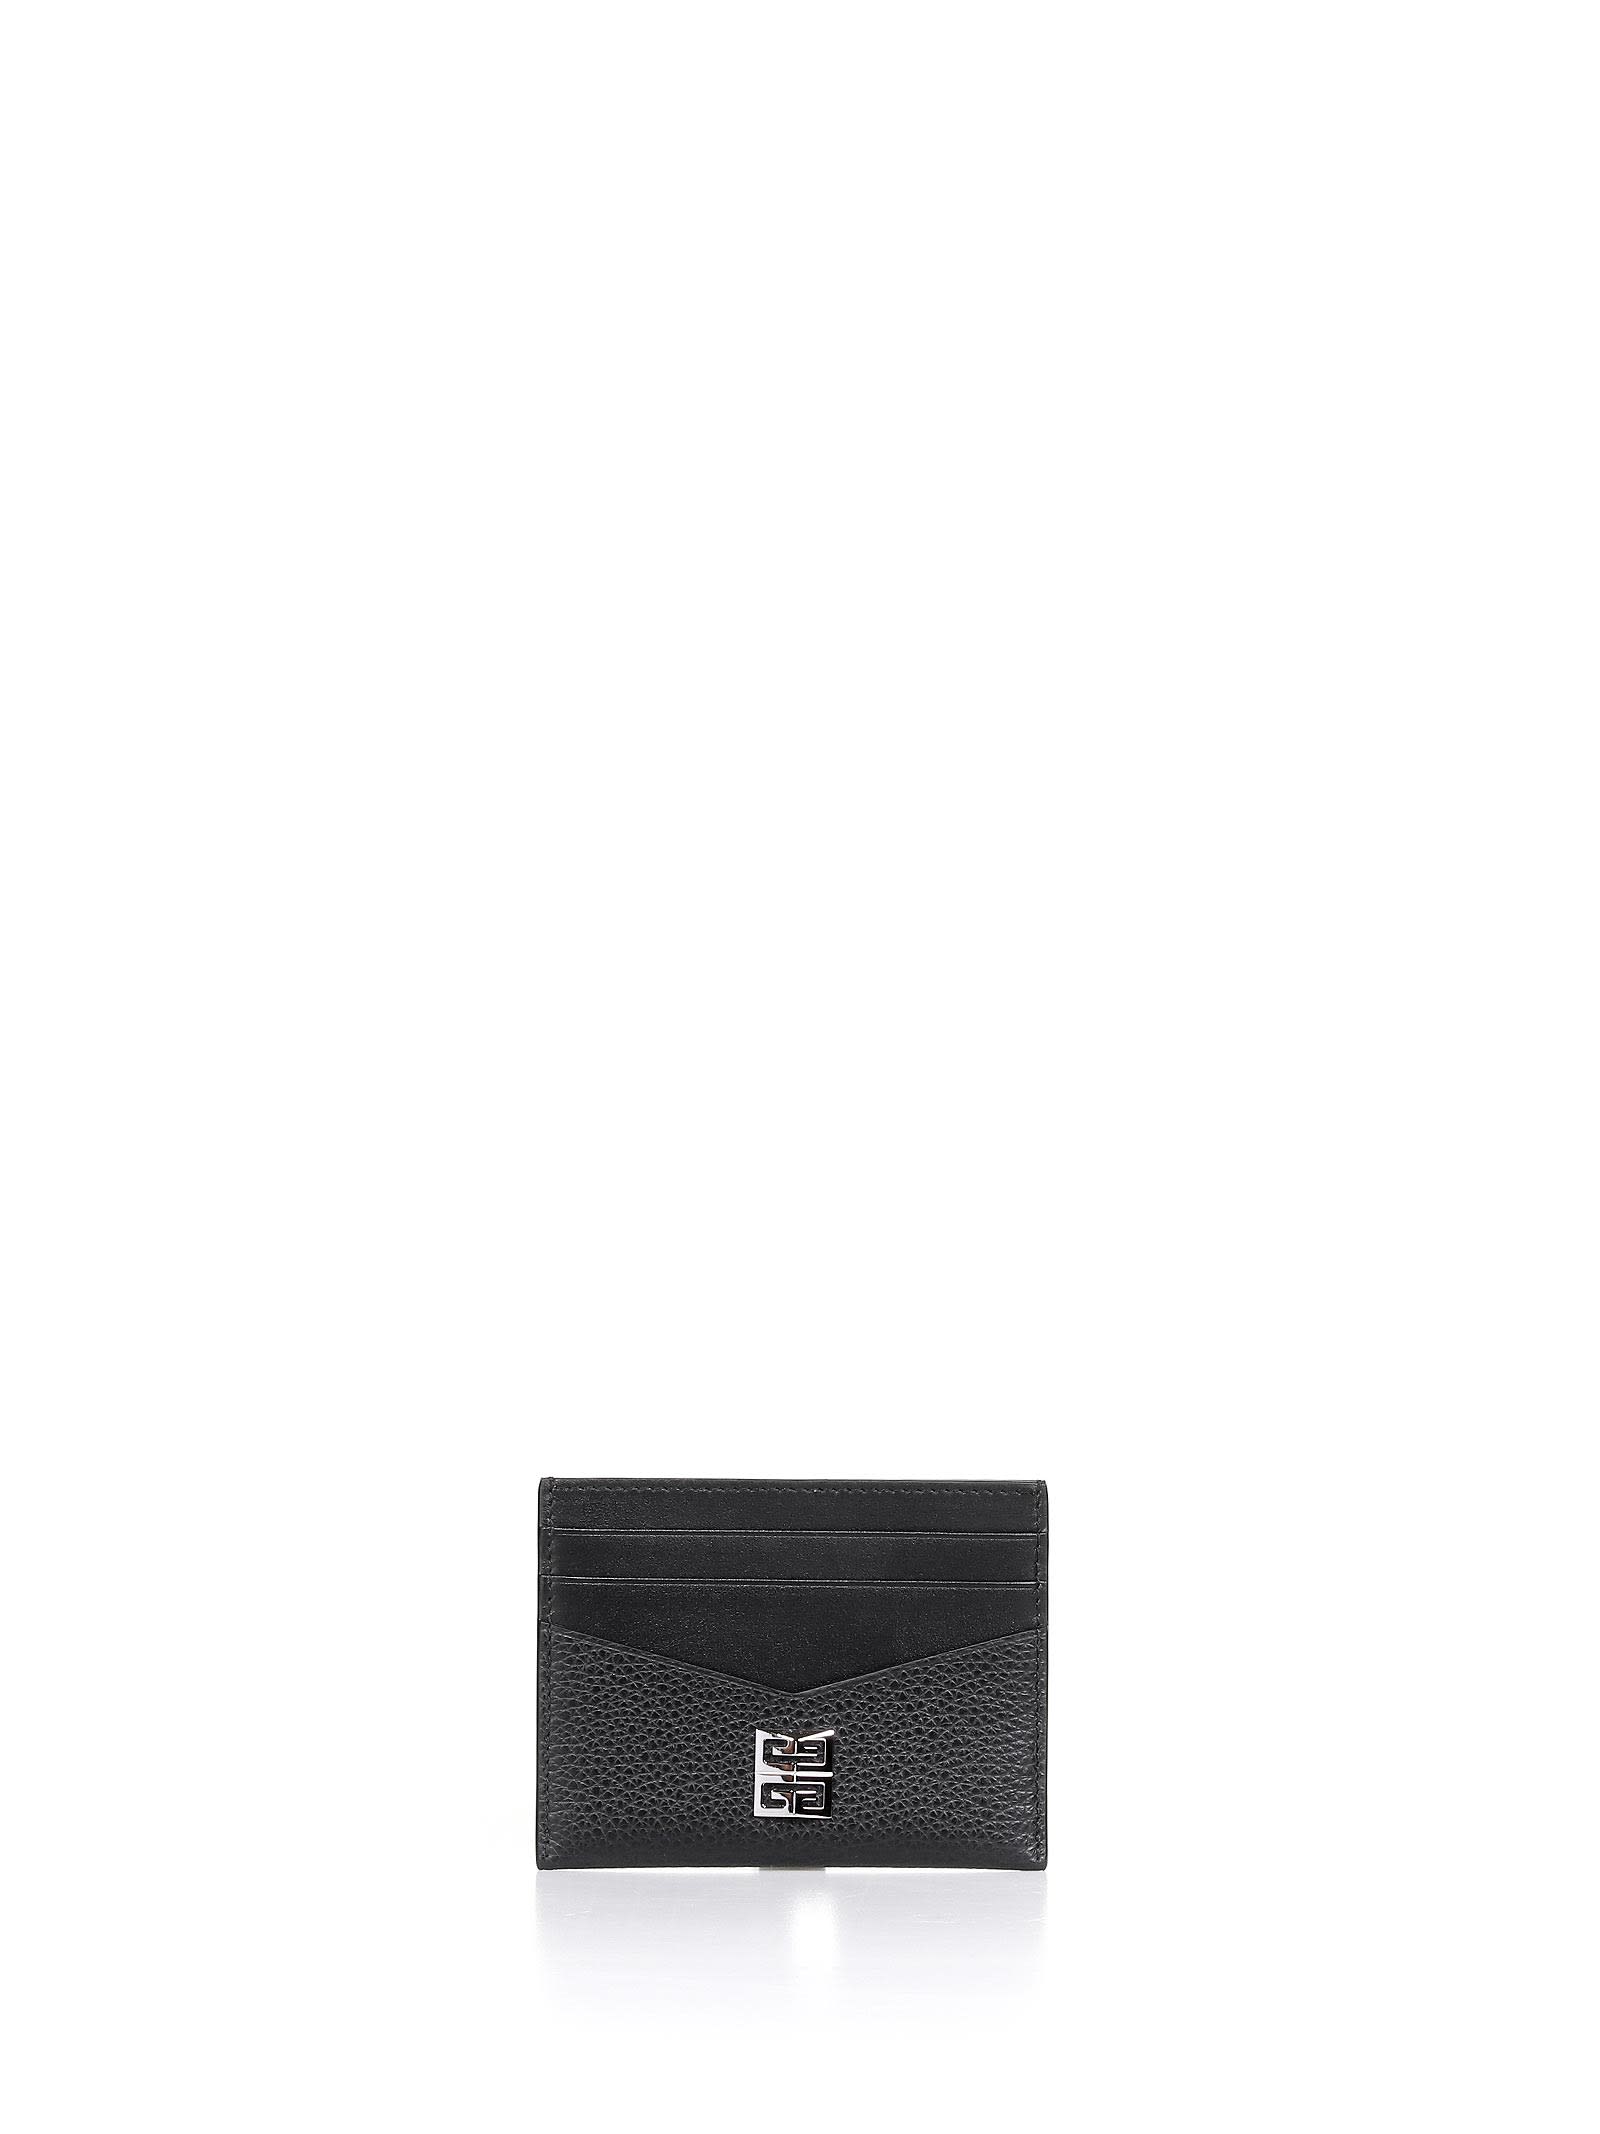 Givenchy Black Card Holder